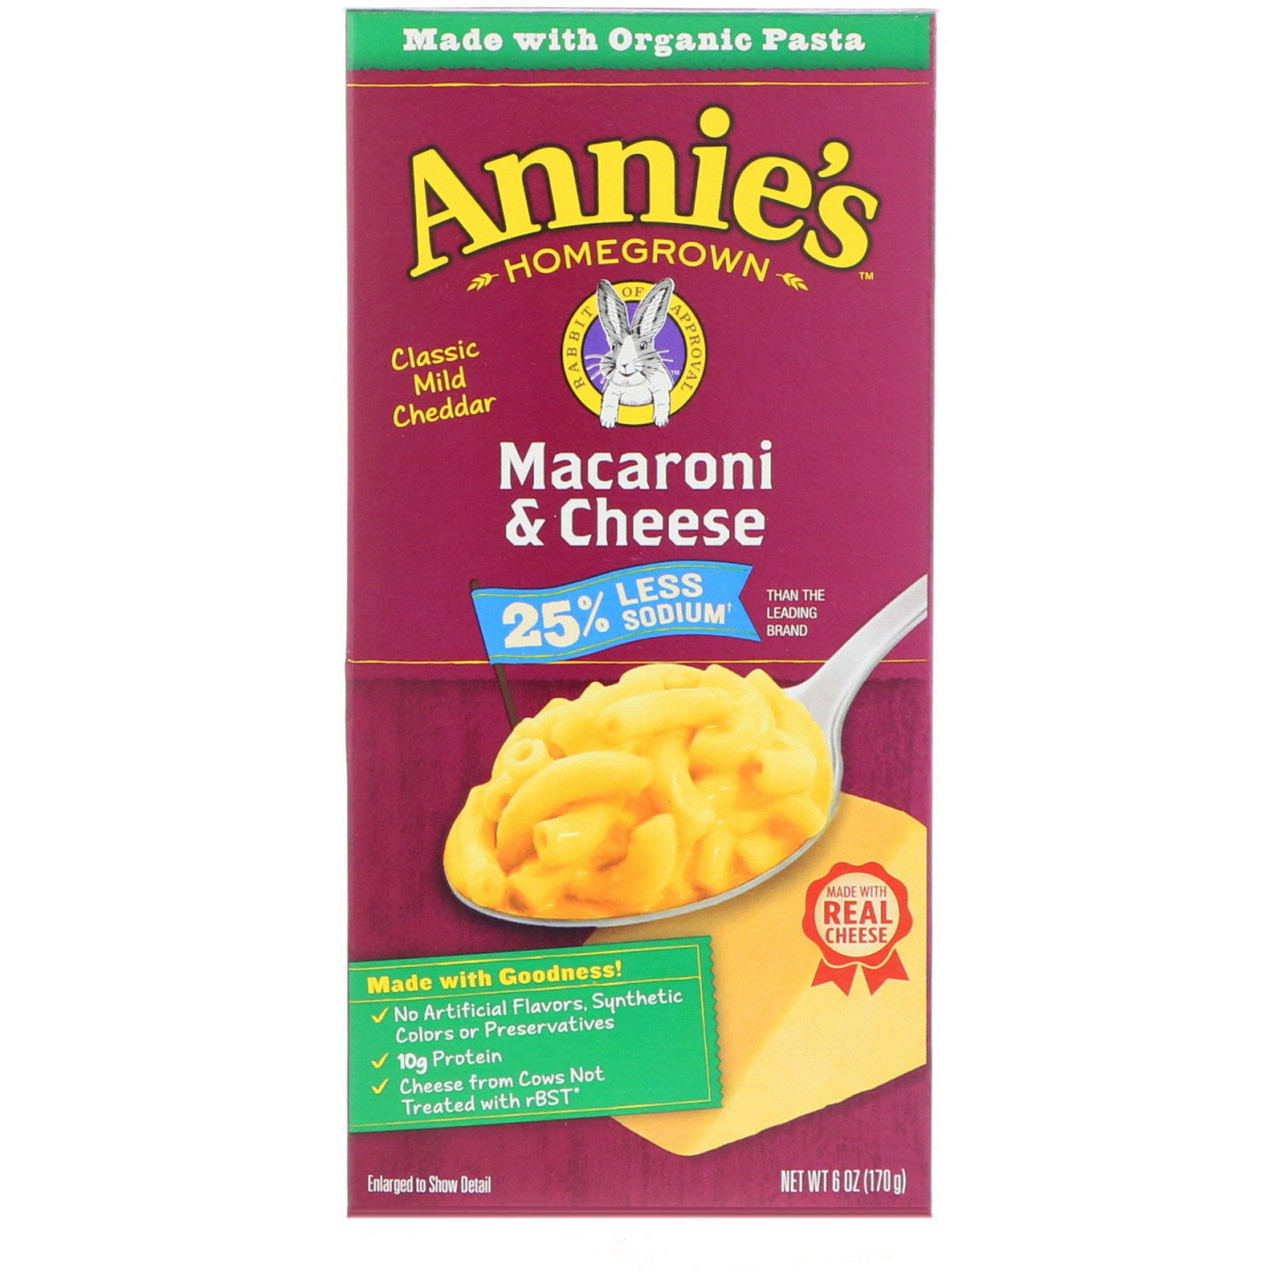 Annie's Доморощені, Органічні макарони з сиром з низьким вмістом солі, 6 унцій (170 м)